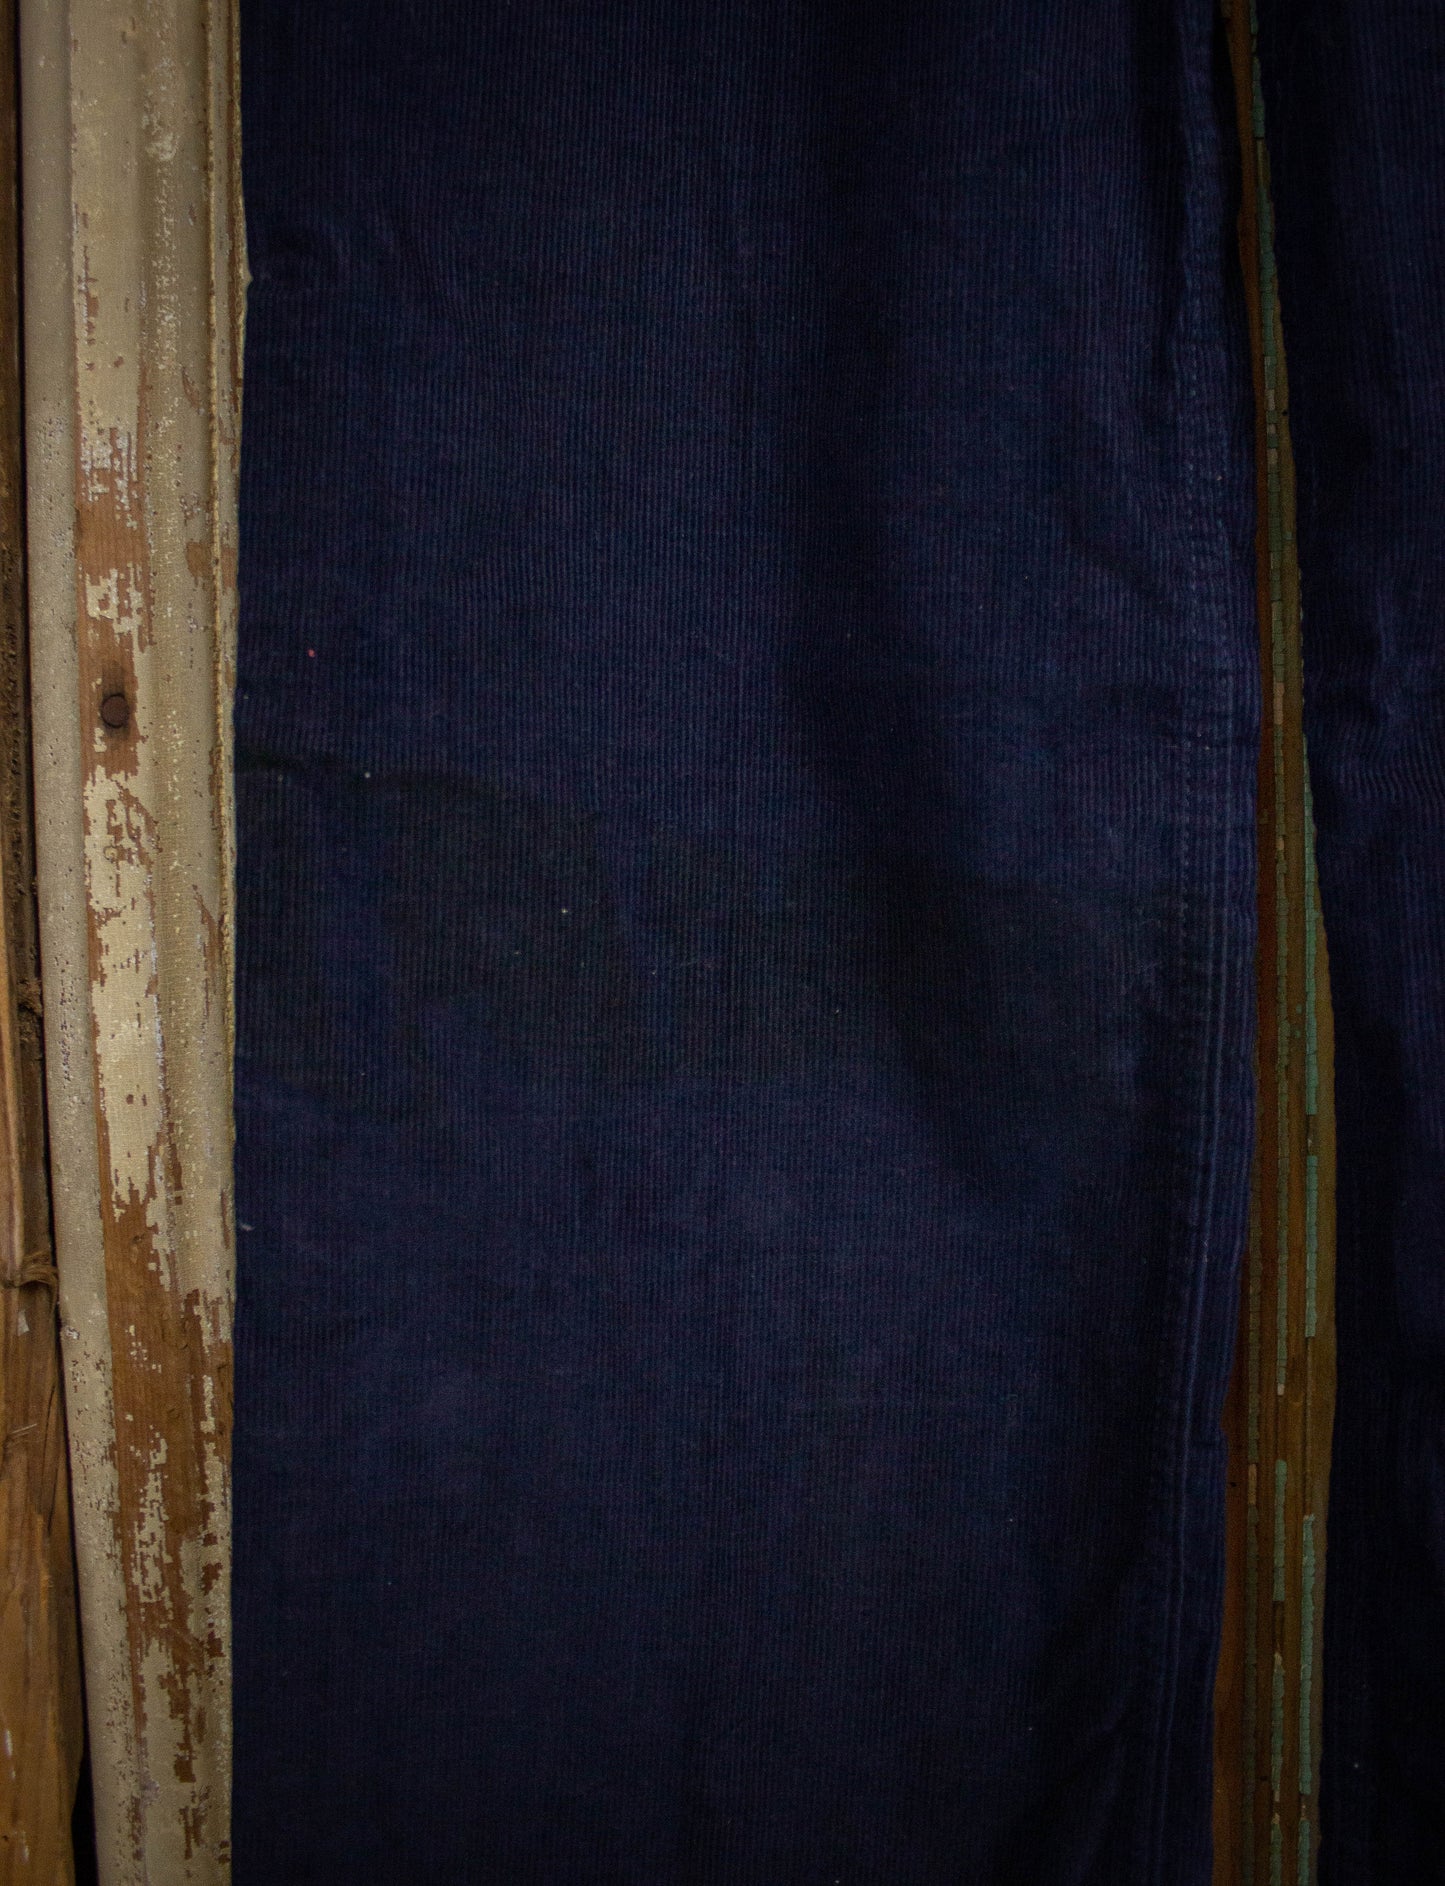 Vintage Levi's Deadstock Corduroy Pants 70s Navy Blue 26x32